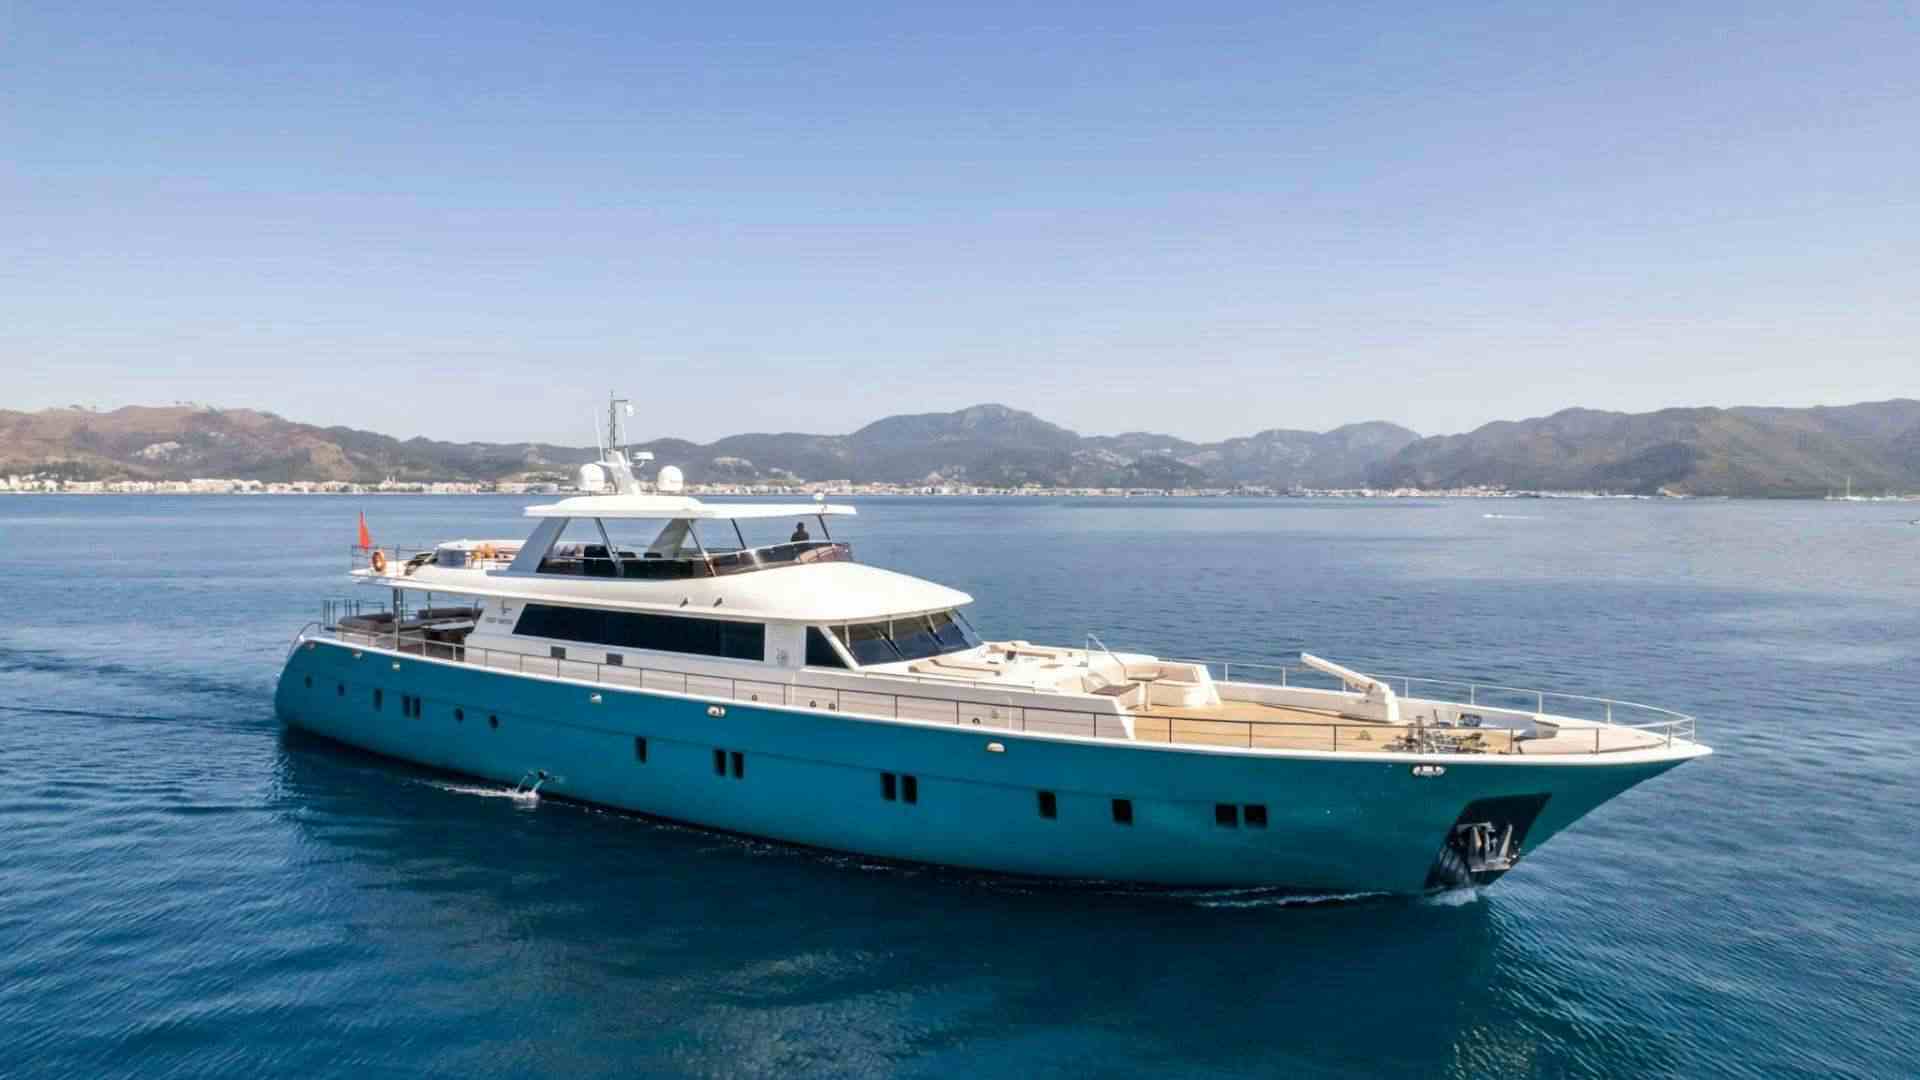 DEEP WATER - Yacht Charter Göcek & Boat hire in Turkey 1